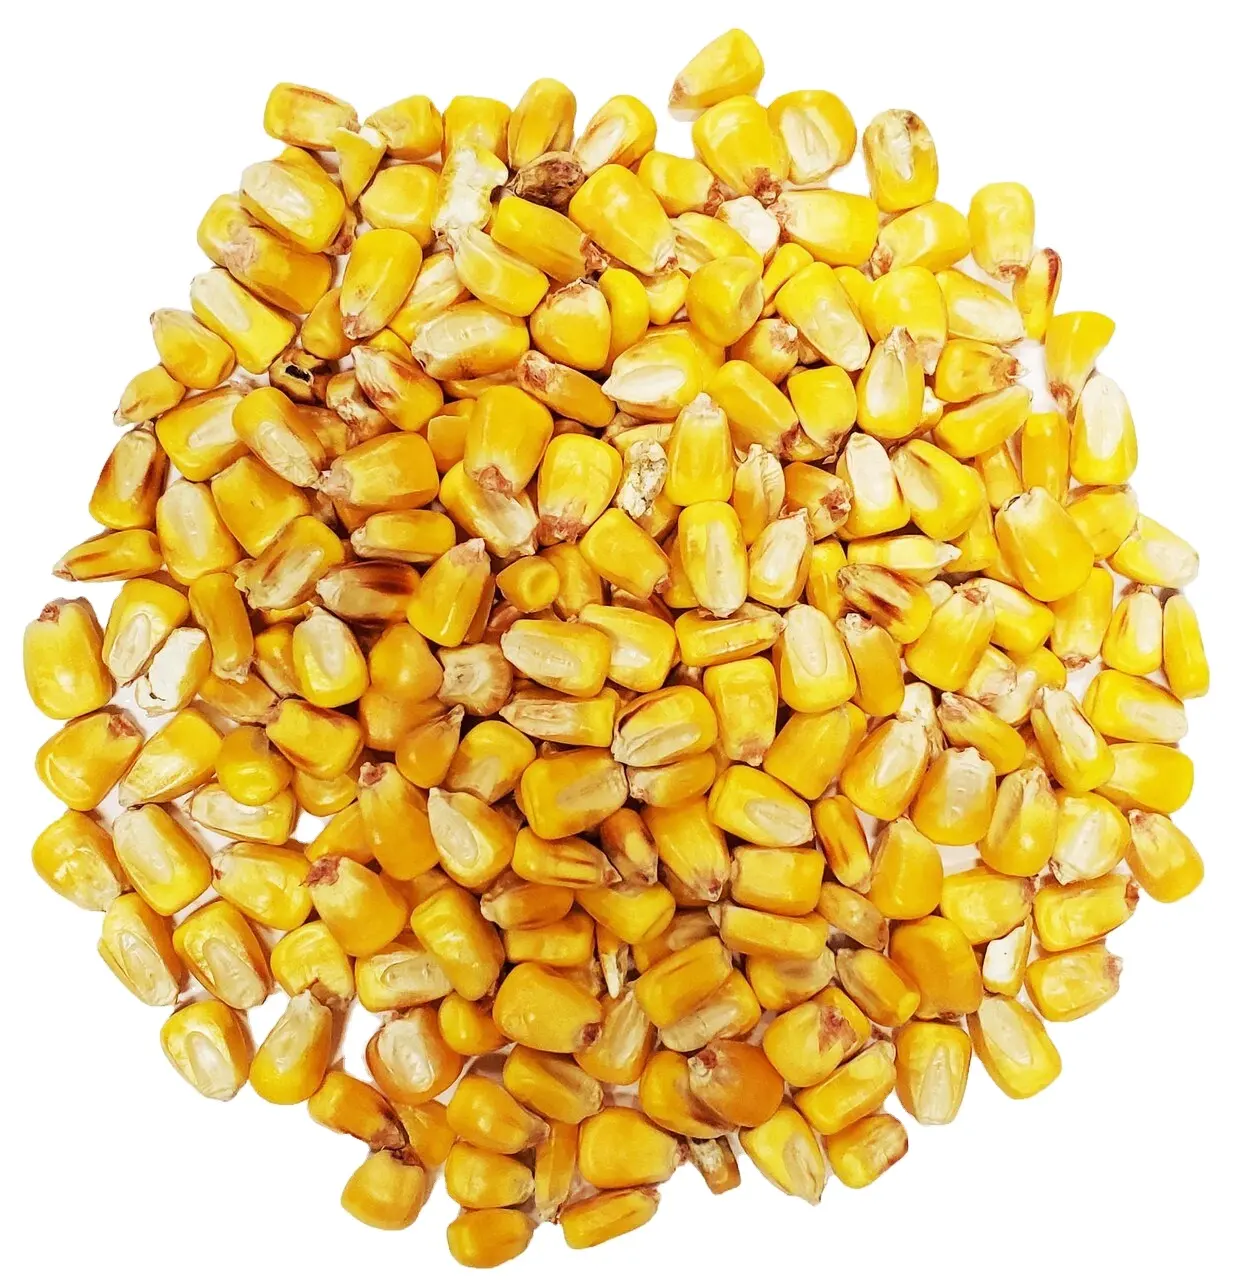 الذرة الصفراء / الذرة لتغذية الحيوانات طراز طعام الغنم الجامد لعدد كبير من السلع جودة درجة اولى بأقل سعر 50 كيلو جرام